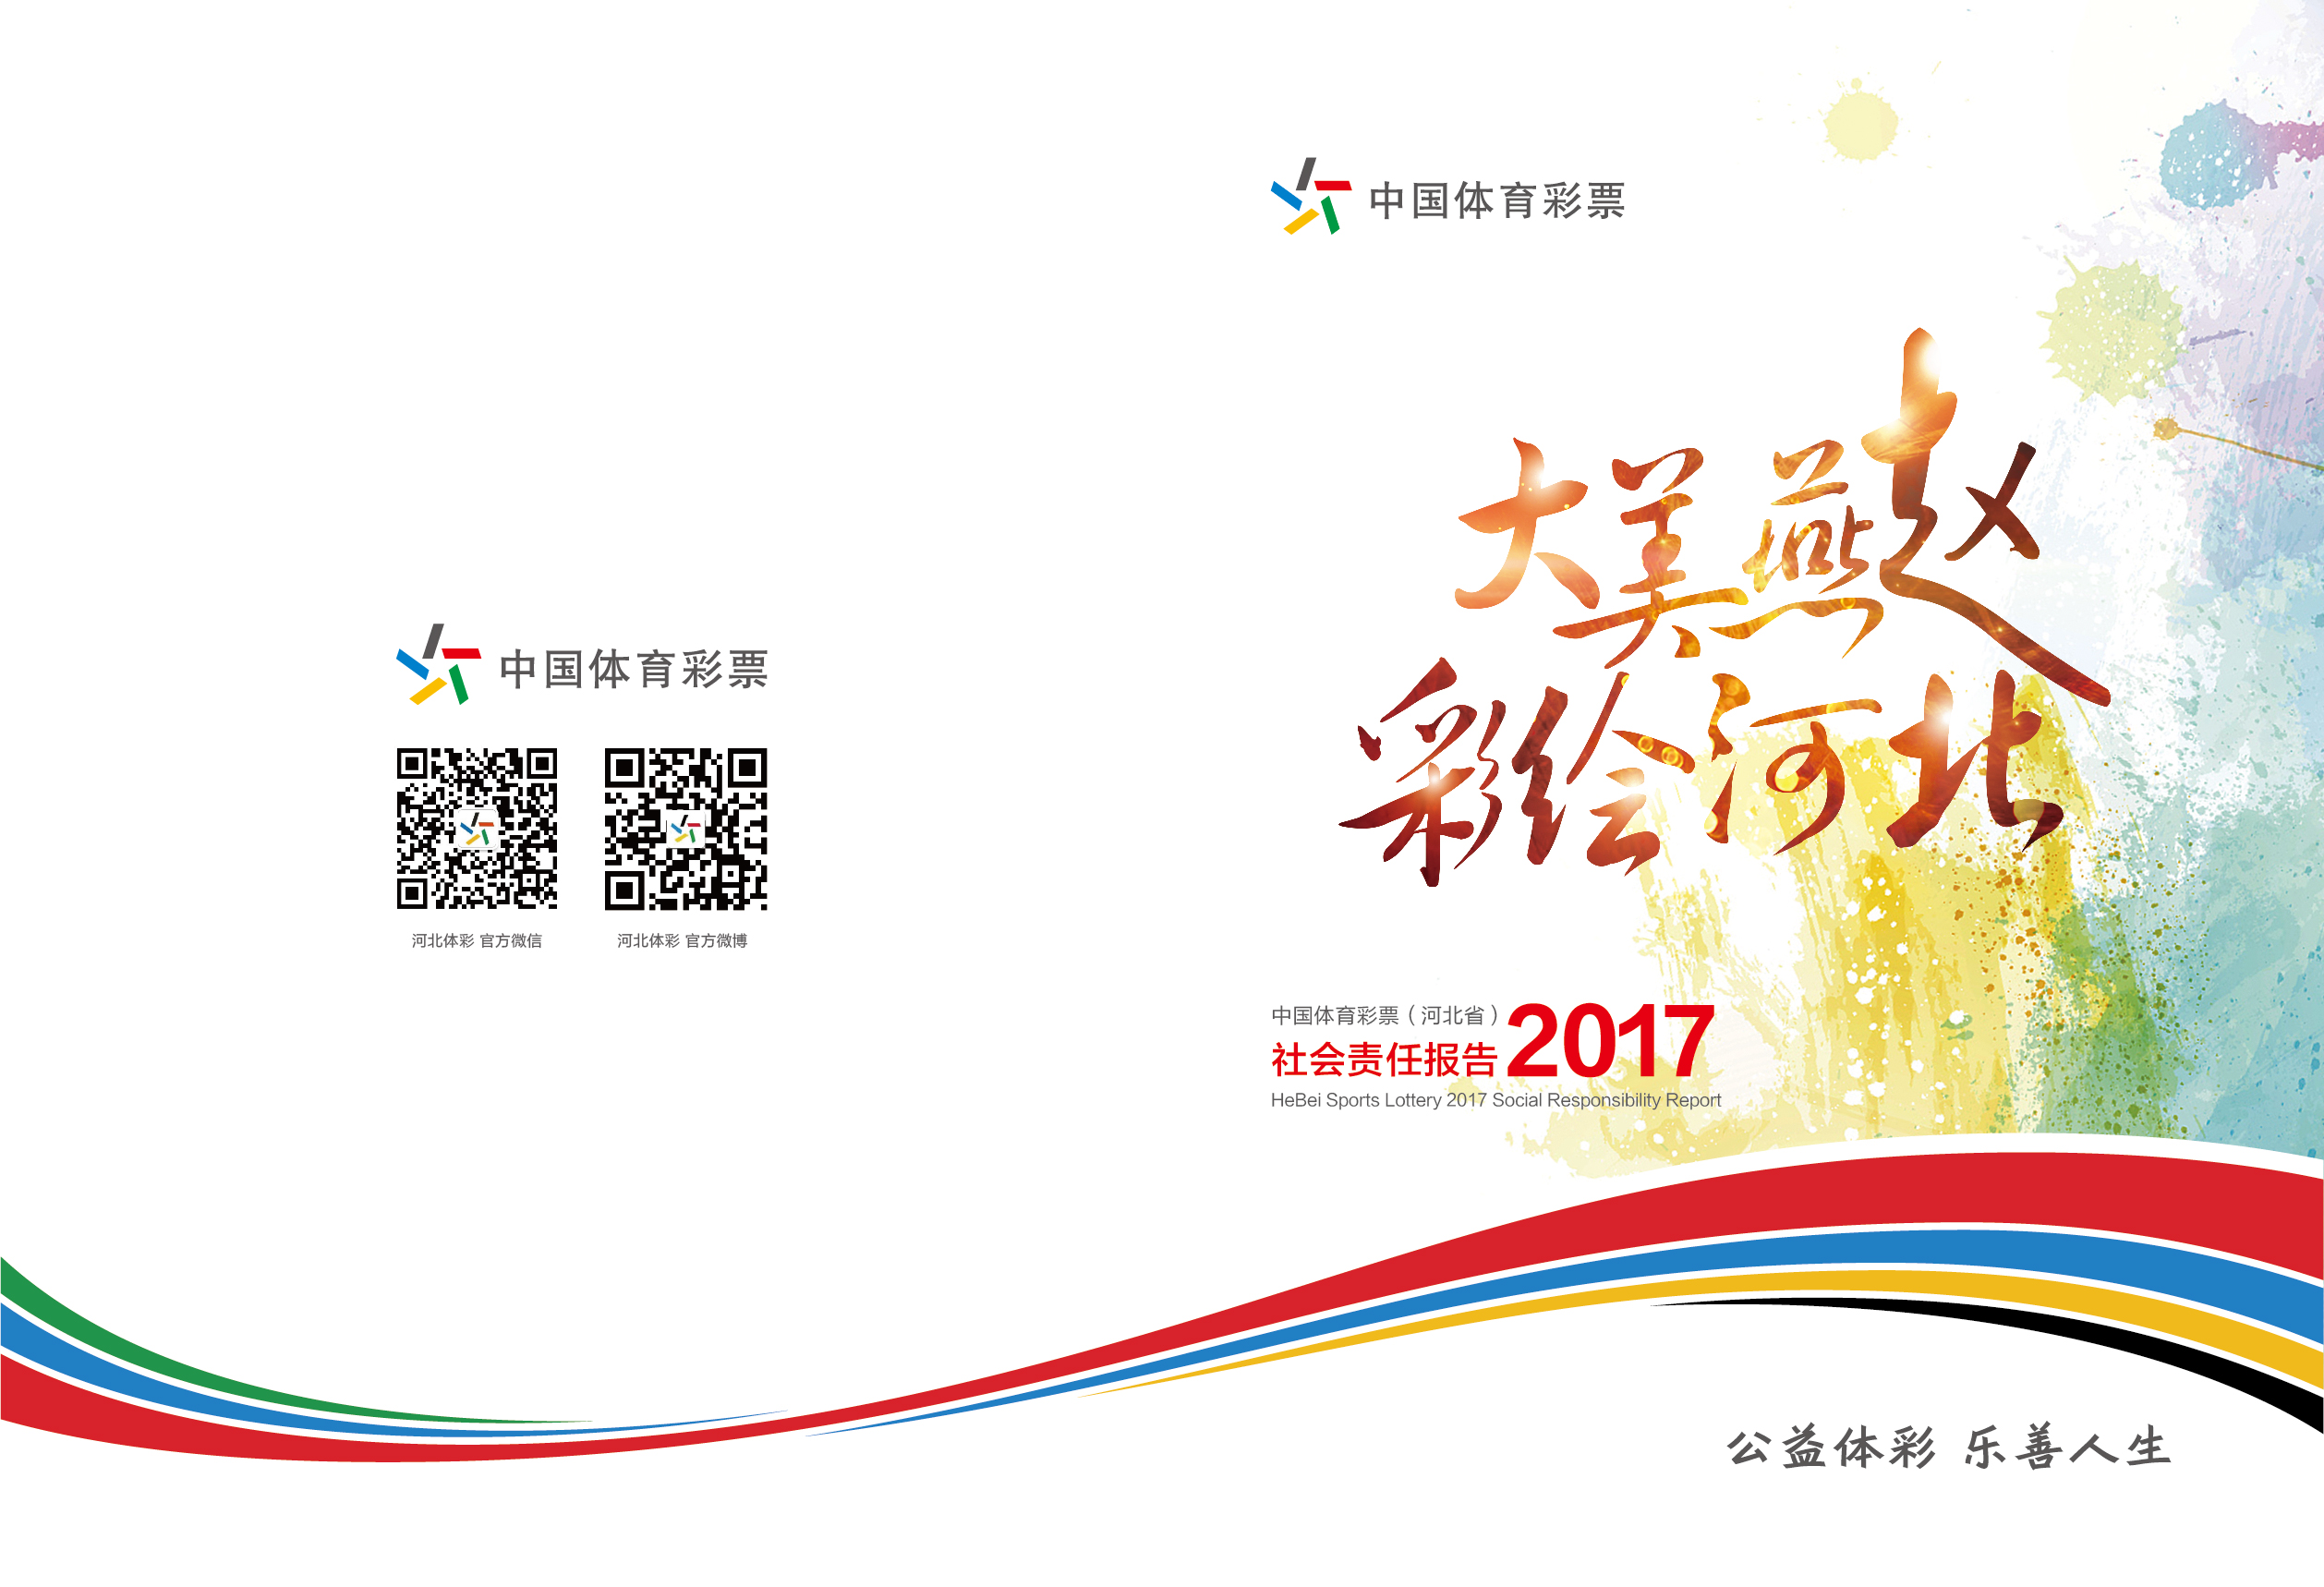 河北省体育彩票2017年社会责任报告-01.jpg